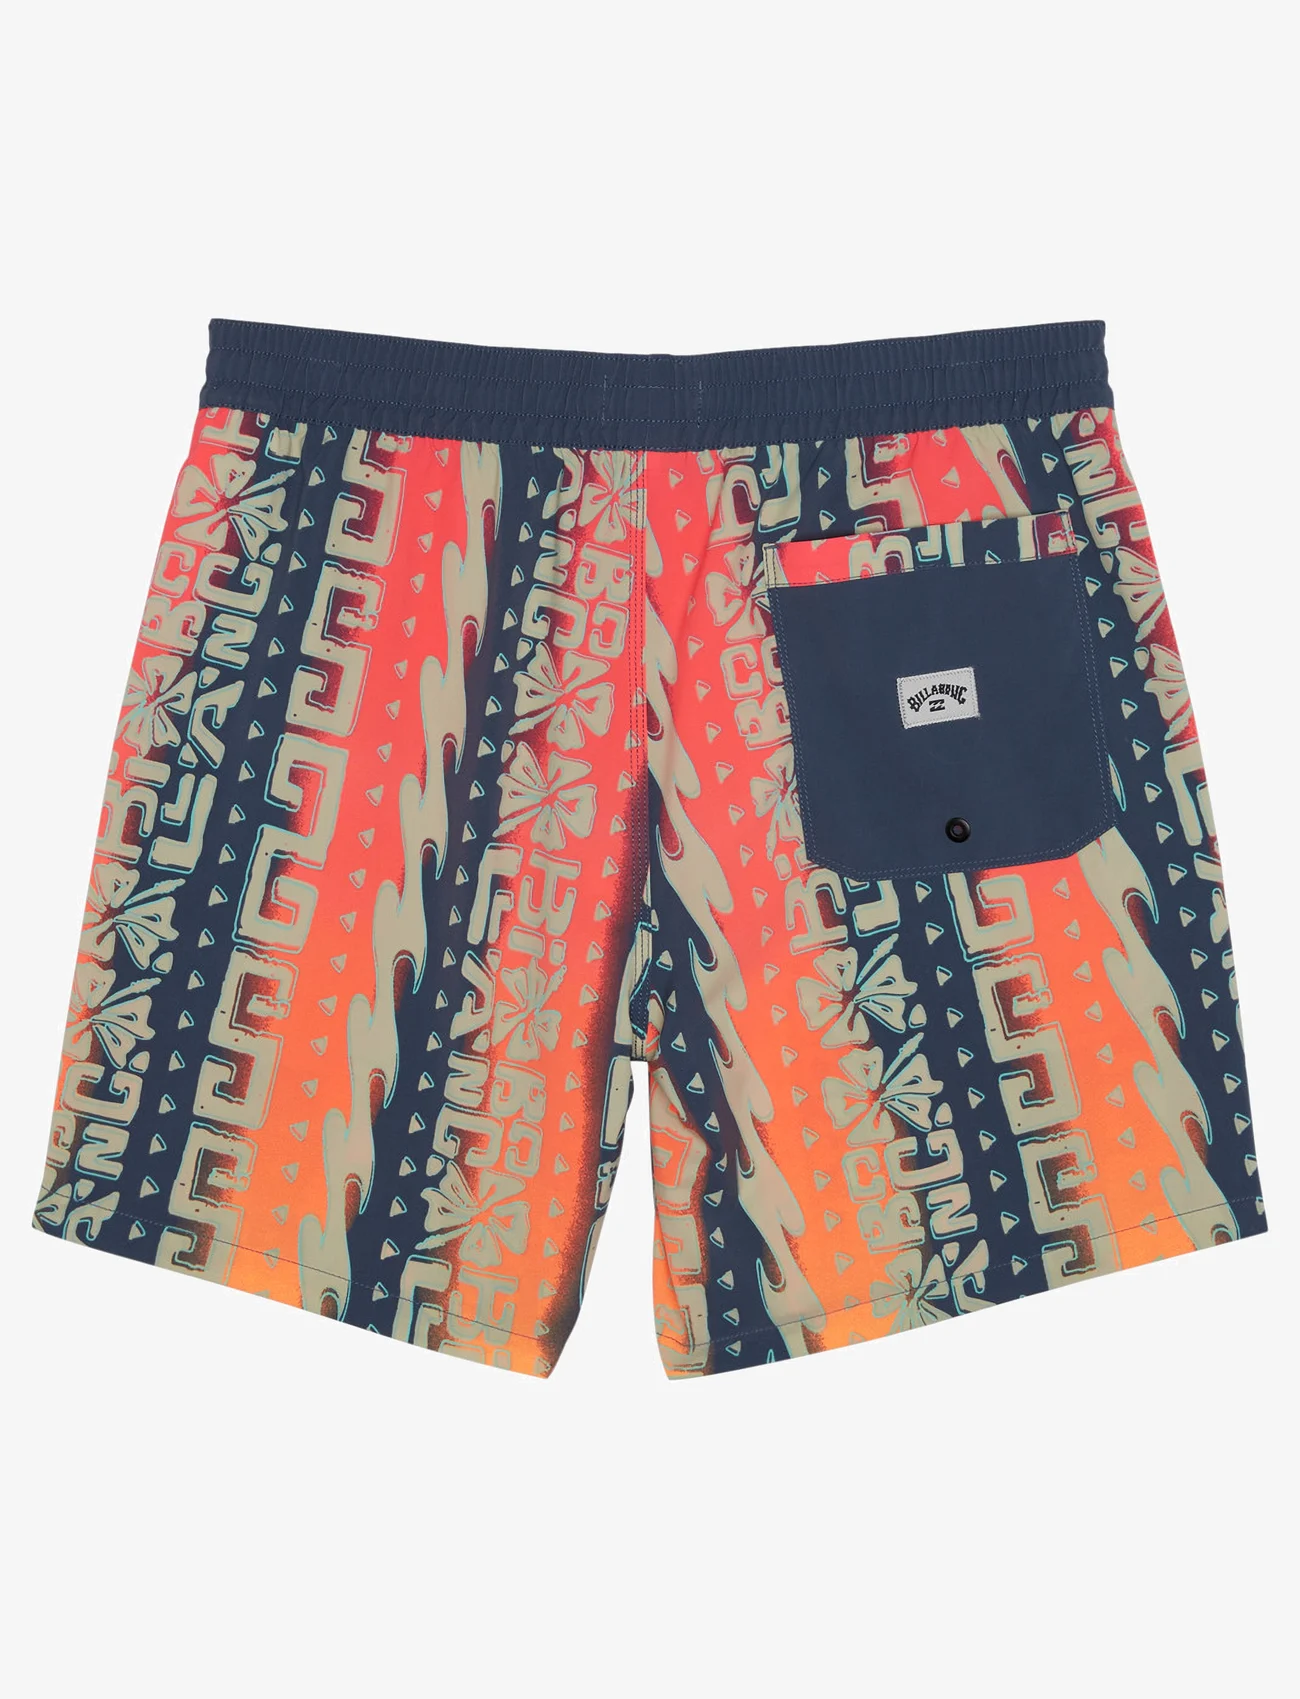 Billabong - SUNDAYS LAYBACK - swim shorts - fade - 1